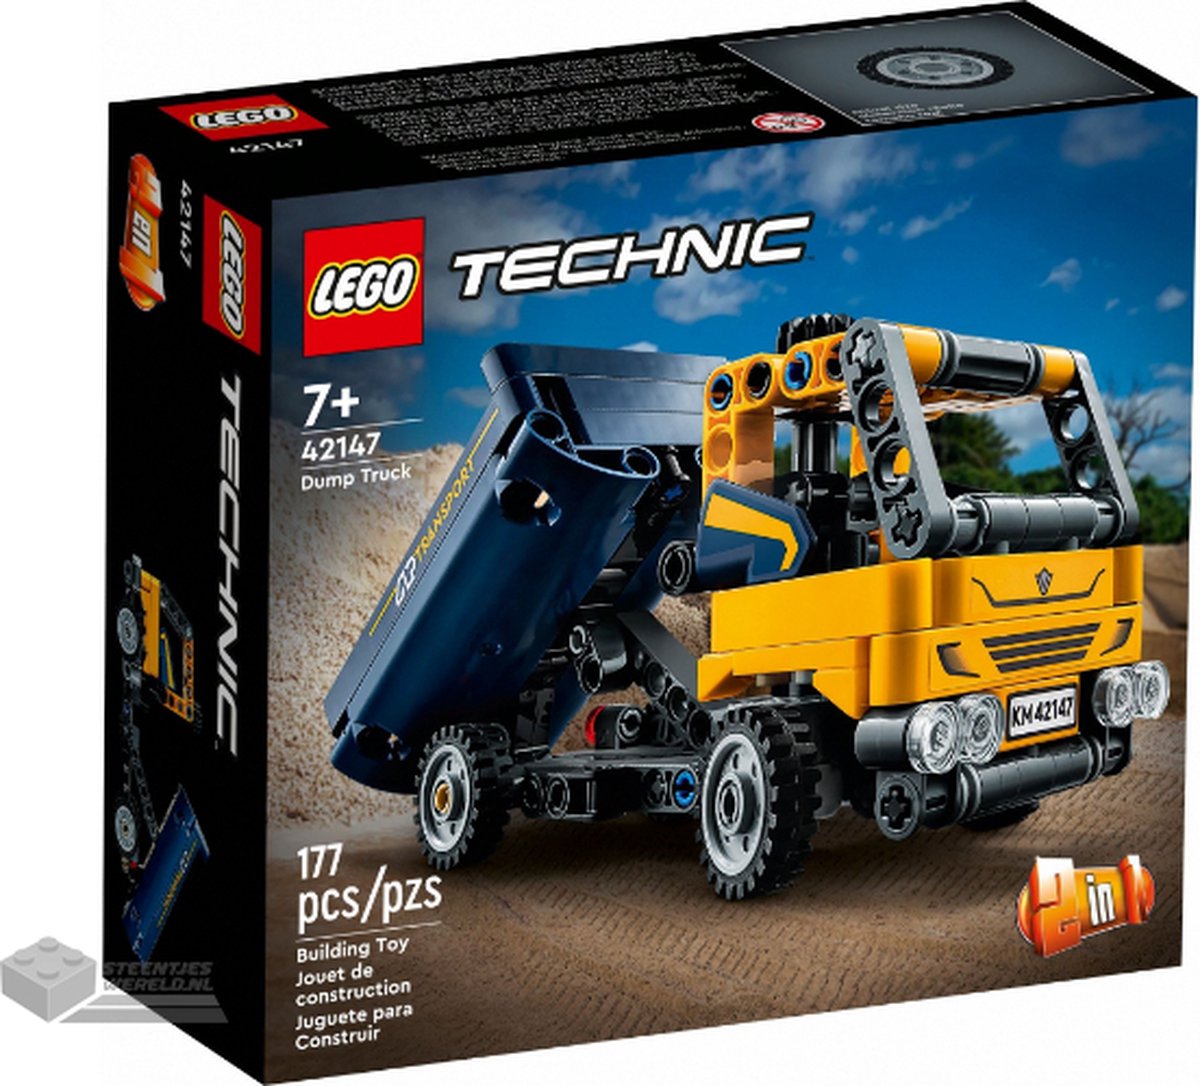 Grand camion bloc de construction jouet enfant benne chantier pas cher 